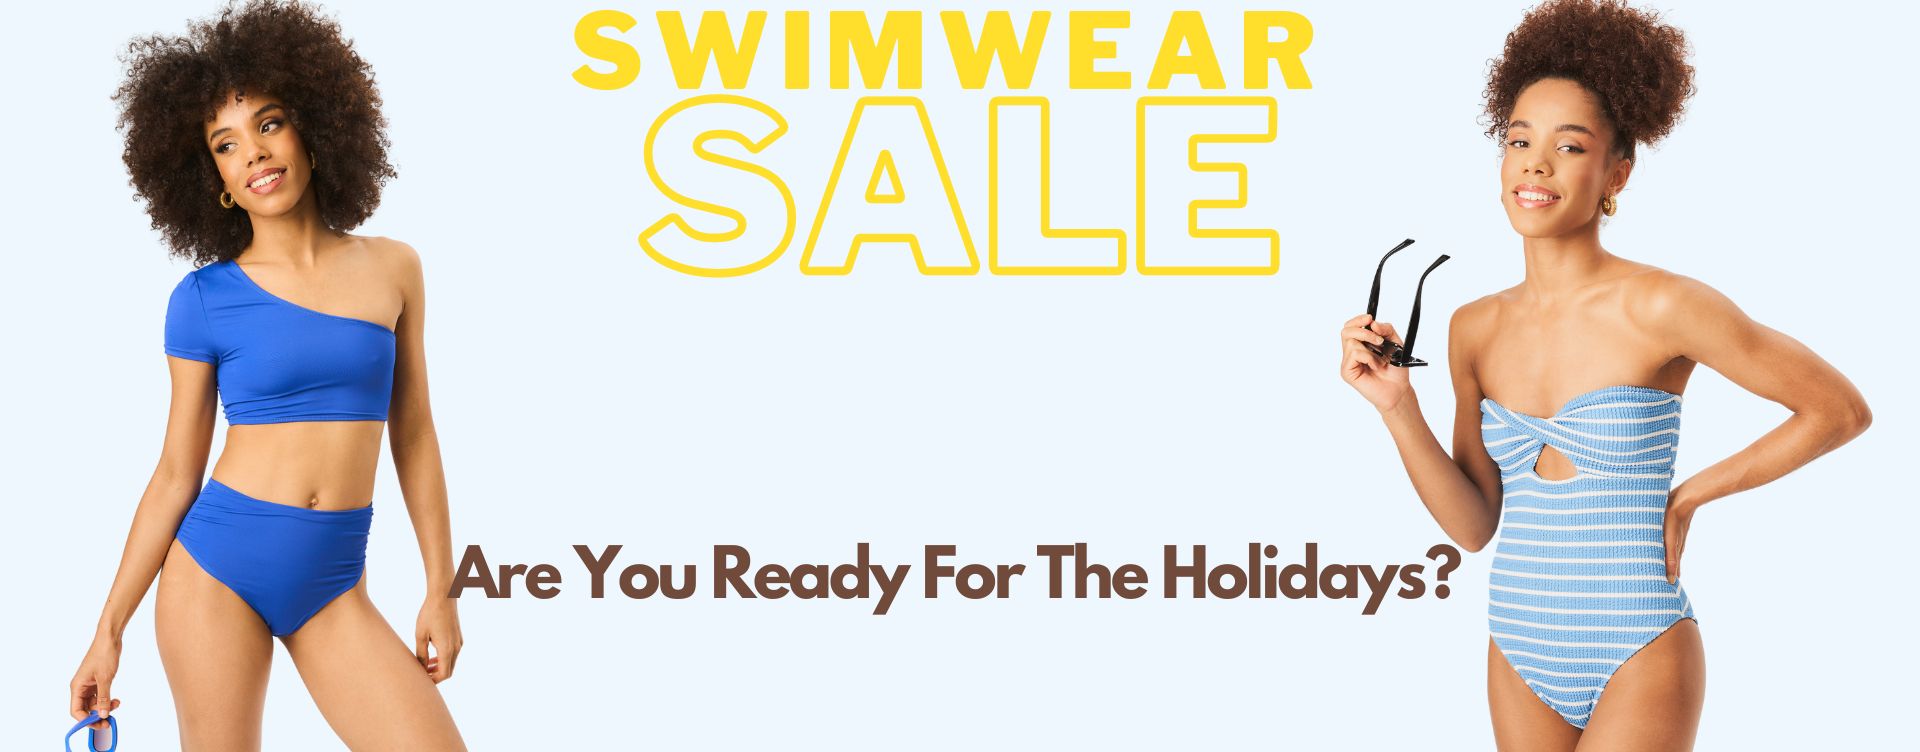 Extra_15_Swimwear_Sale_is_Now_On_4.jpg